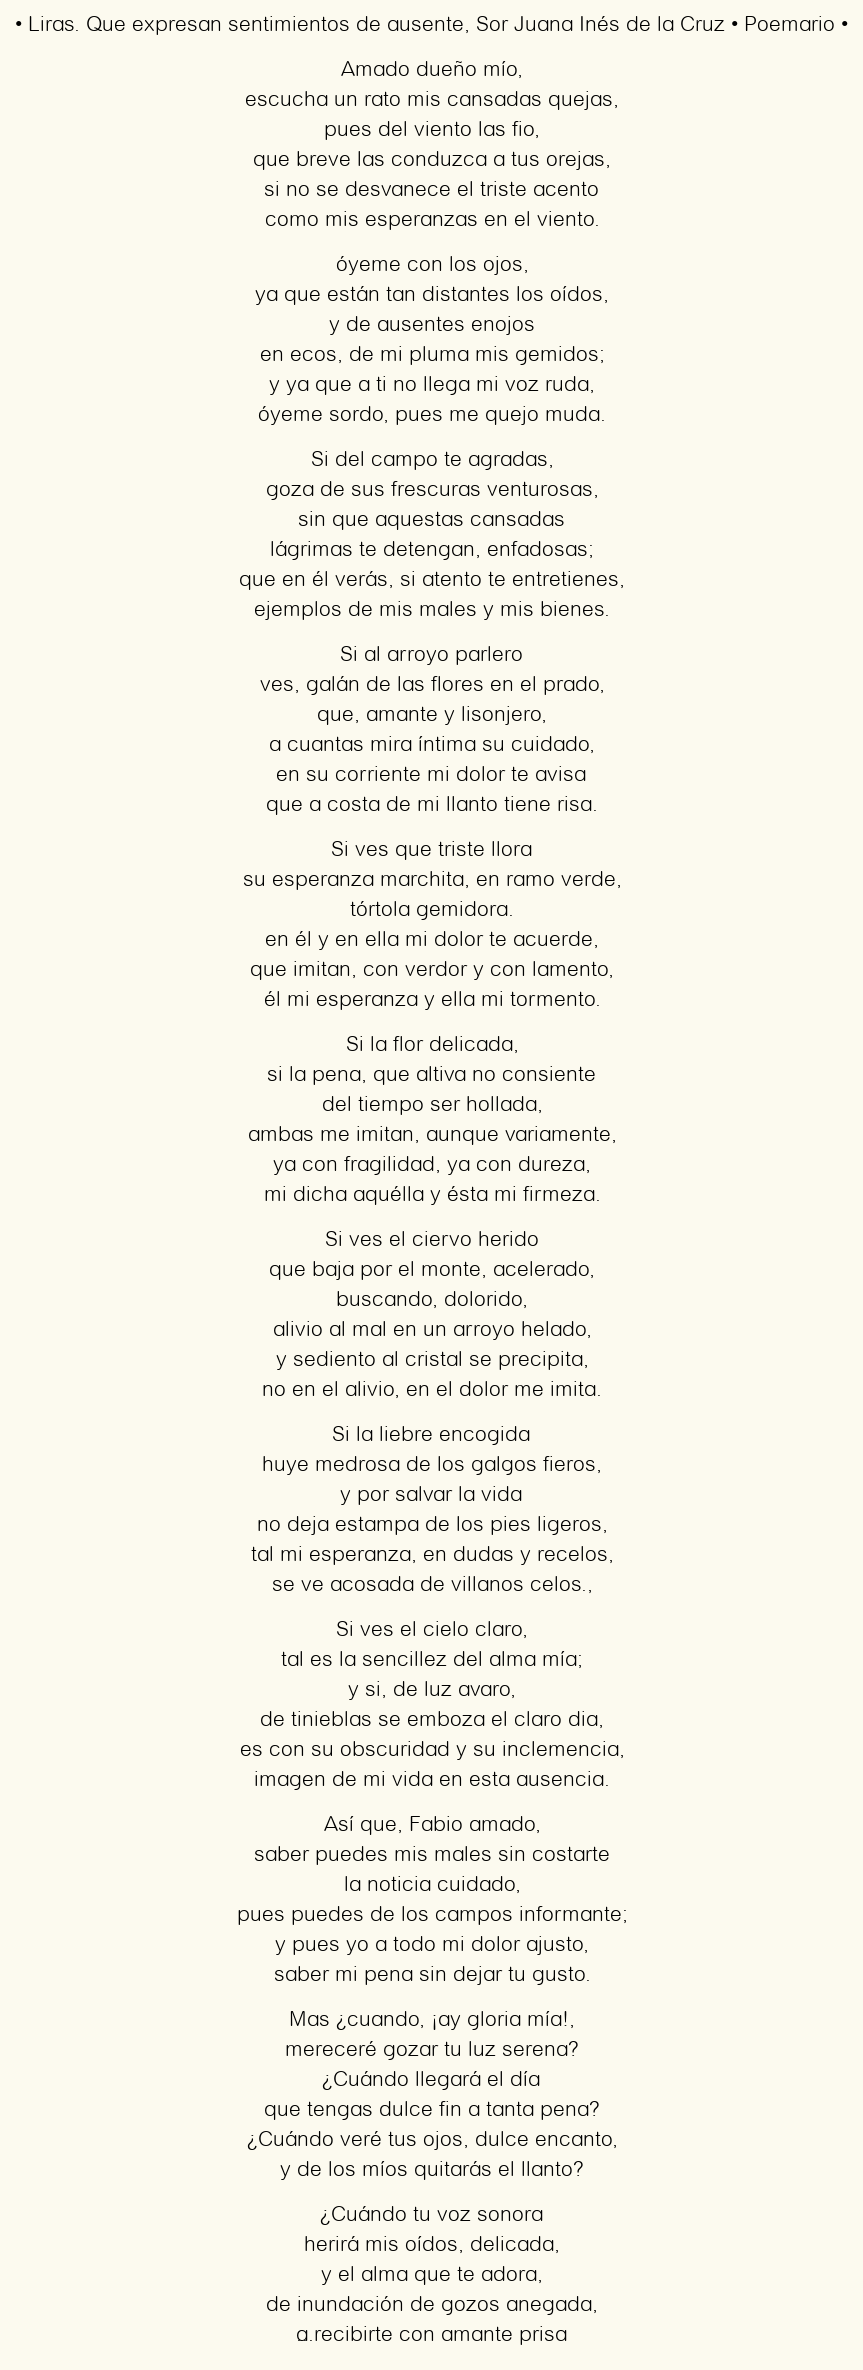 Imagen con el poema Liras. Que expresan sentimientos de ausente, por Sor Juana Inés de la Cruz